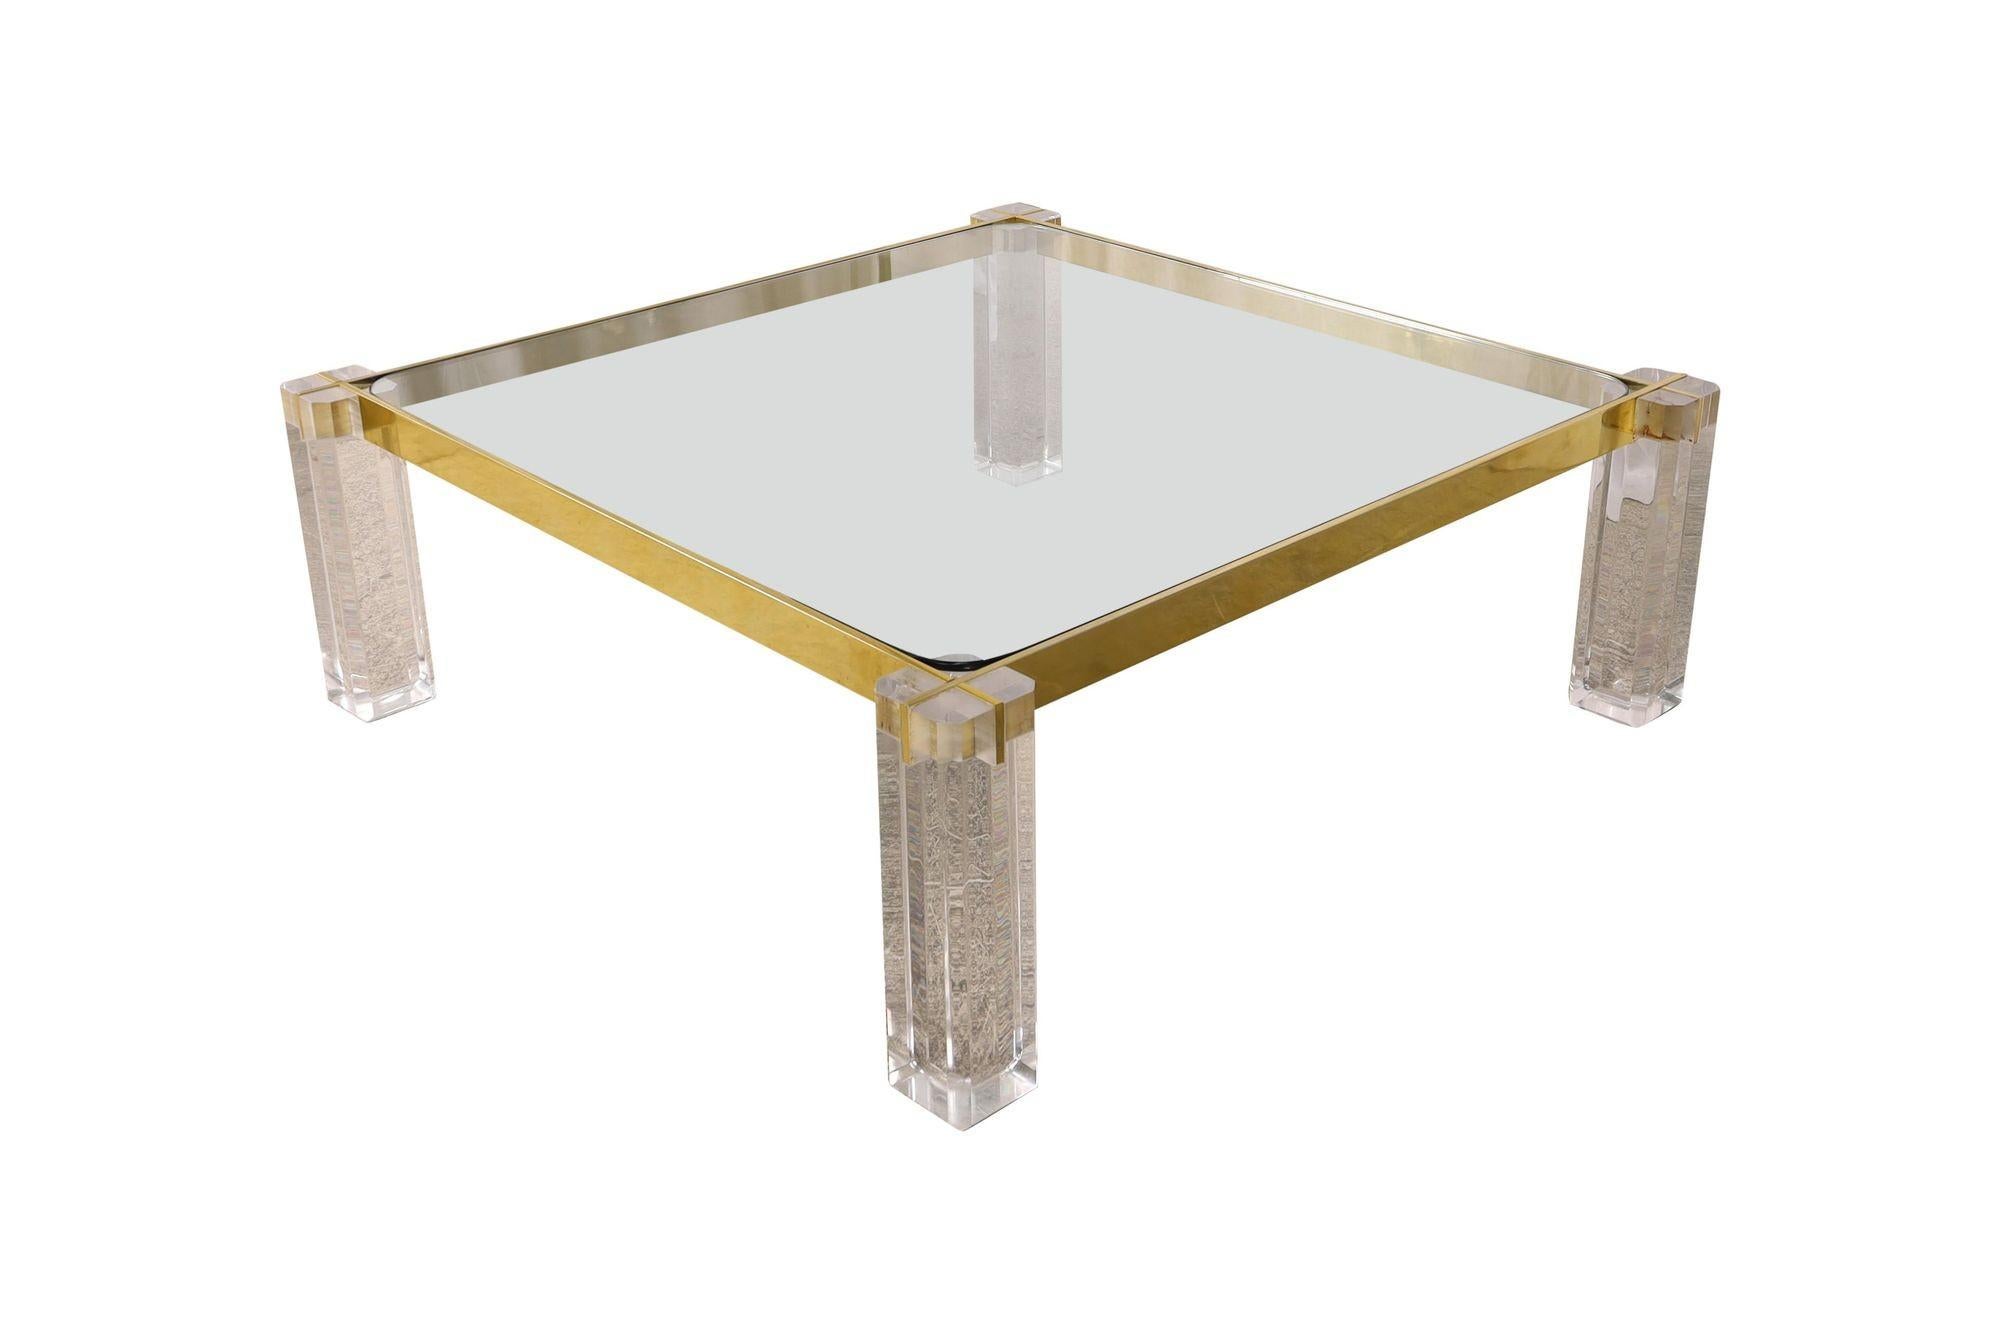 Table basse carrée Vintage Mid-Century fabriquée aux Etats-Unis dans les années 1970. Sa particularité réside dans ses pieds en lucite transparente et dans le cadre en laiton qui l'entoure. Il est protégé par un épais plateau en verre.
Dimensions